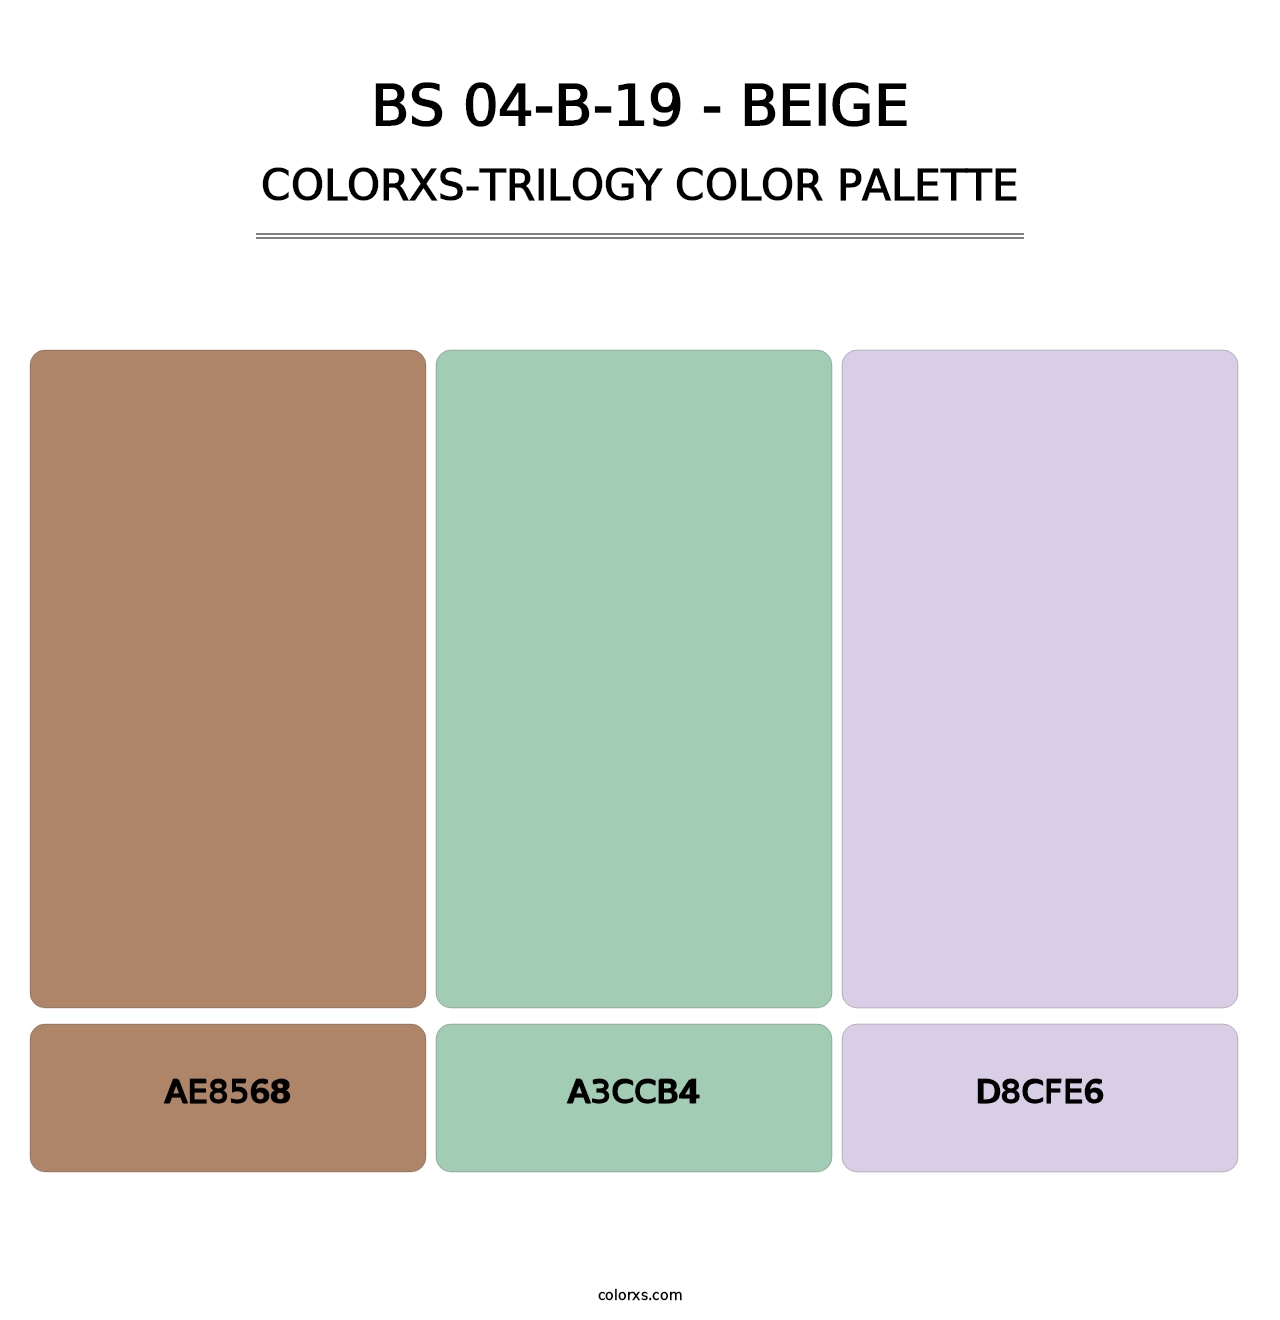 BS 04-B-19 - Beige - Colorxs Trilogy Palette